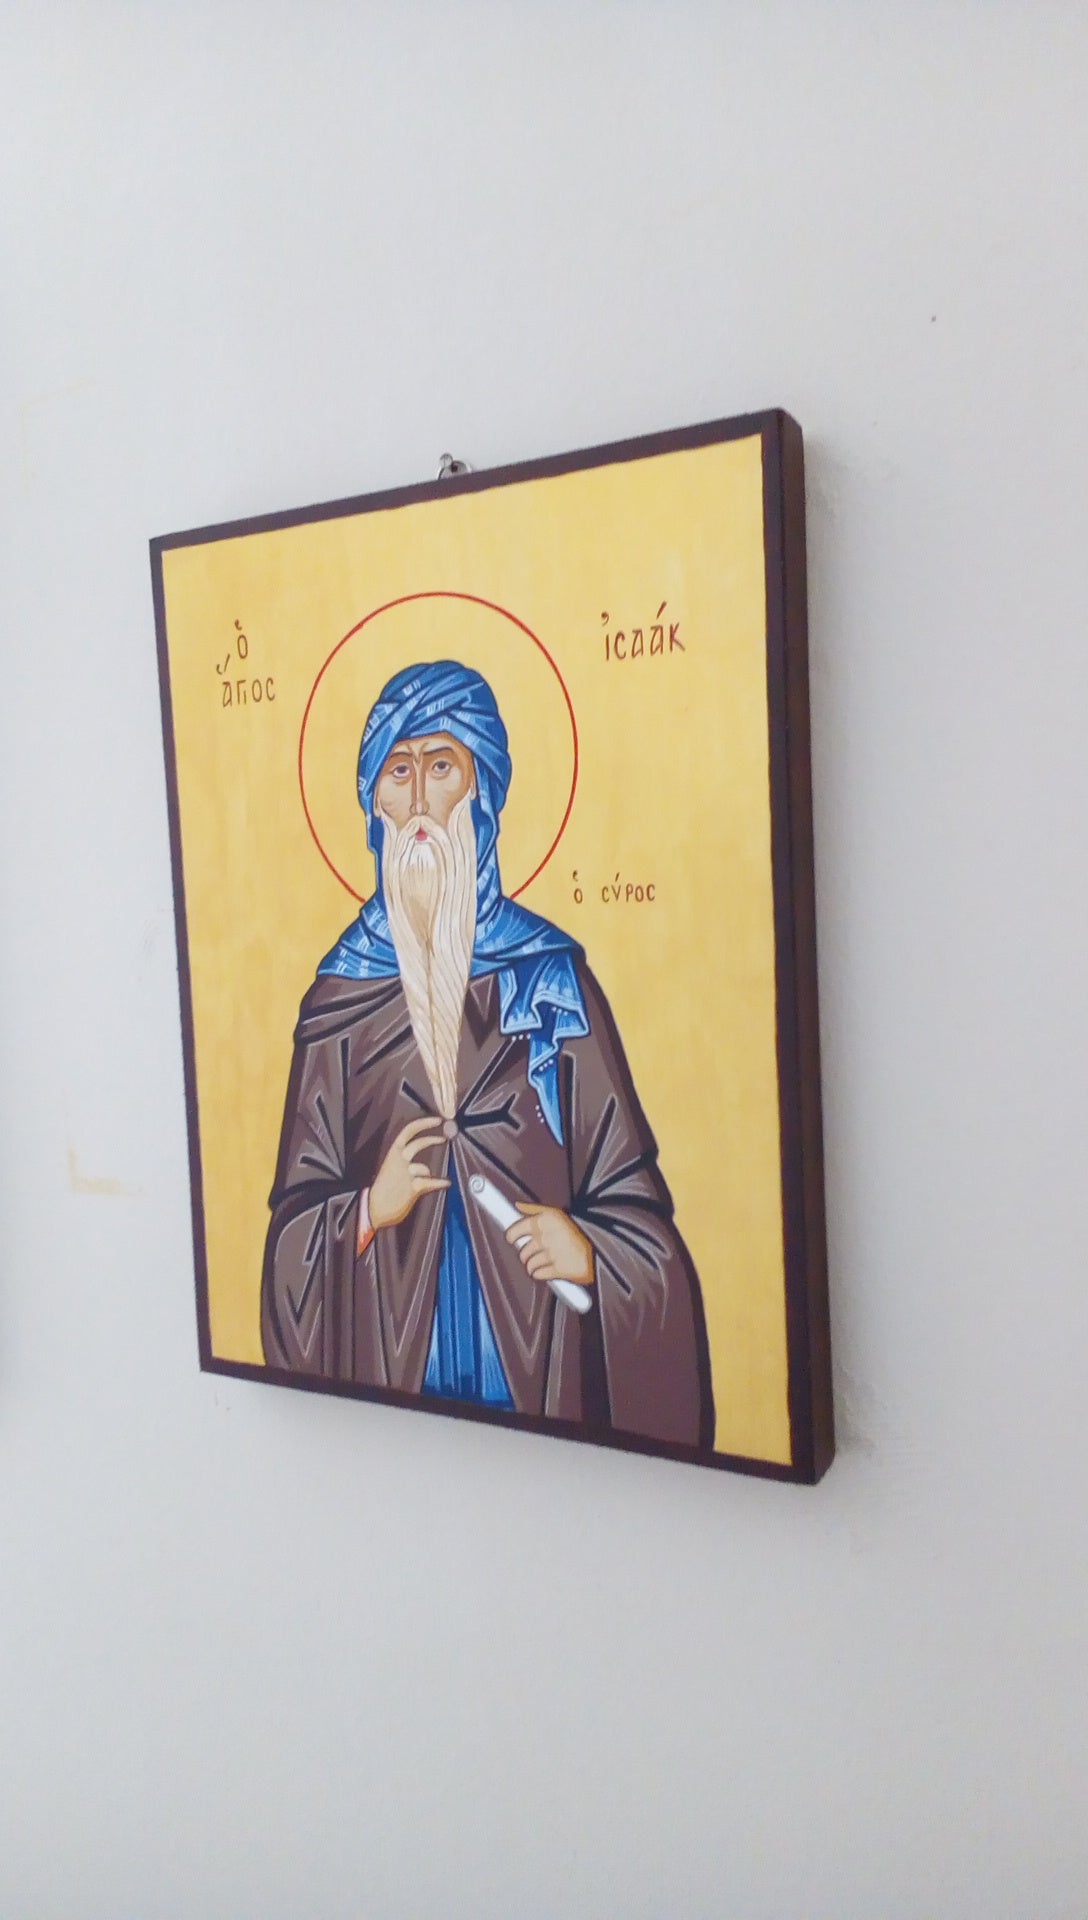 Saint Isaac the Syrian - HandmadeIconsGreece